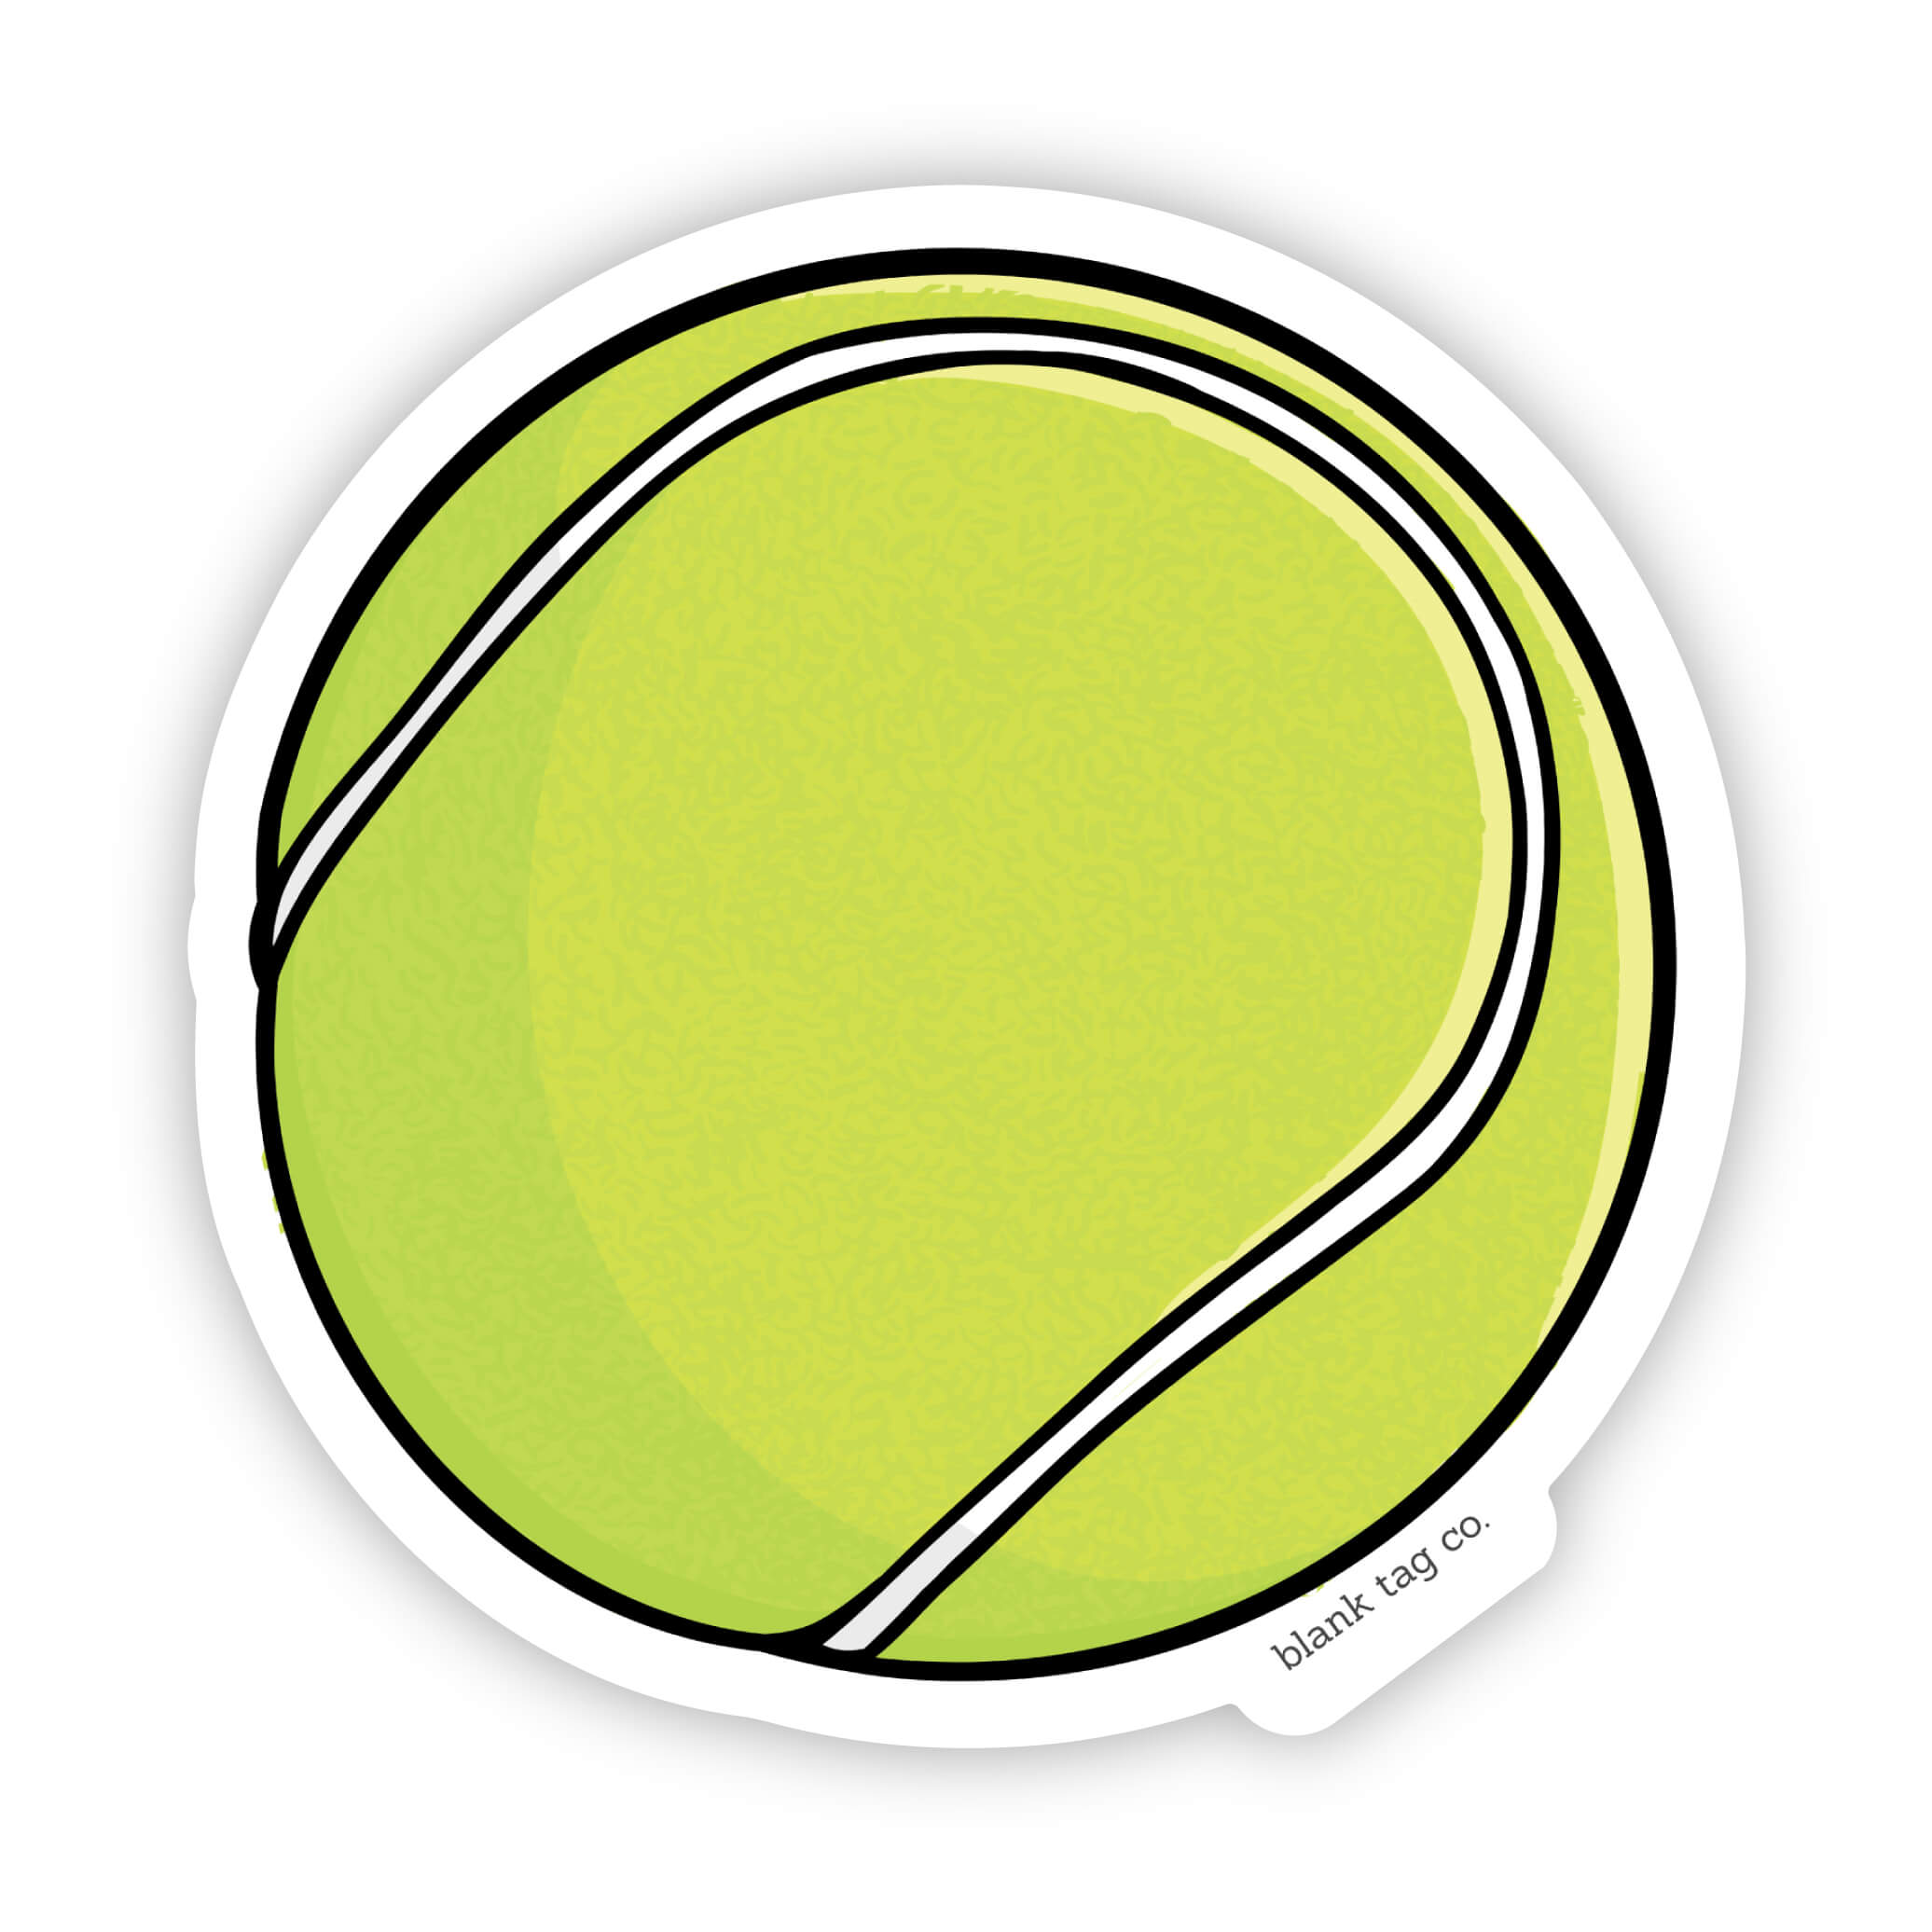 The Tennis Ball Sticker